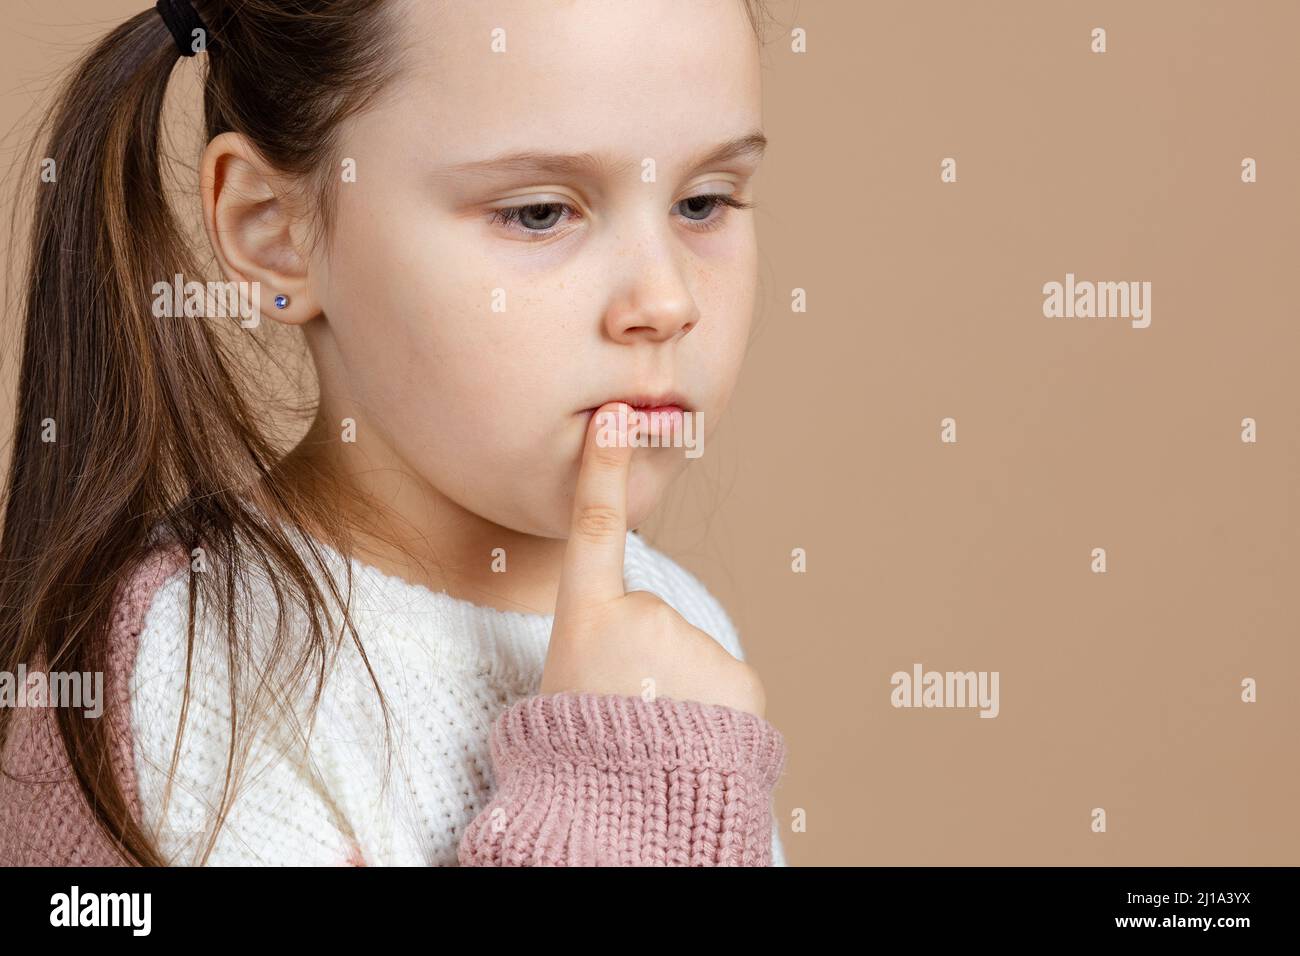 Retrato de joven lindo triste pensivo azul-eyed chica con largo pelo oscuro en blanco y rosa suéter de pie con el dedo índice apuntando a la boca Foto de stock